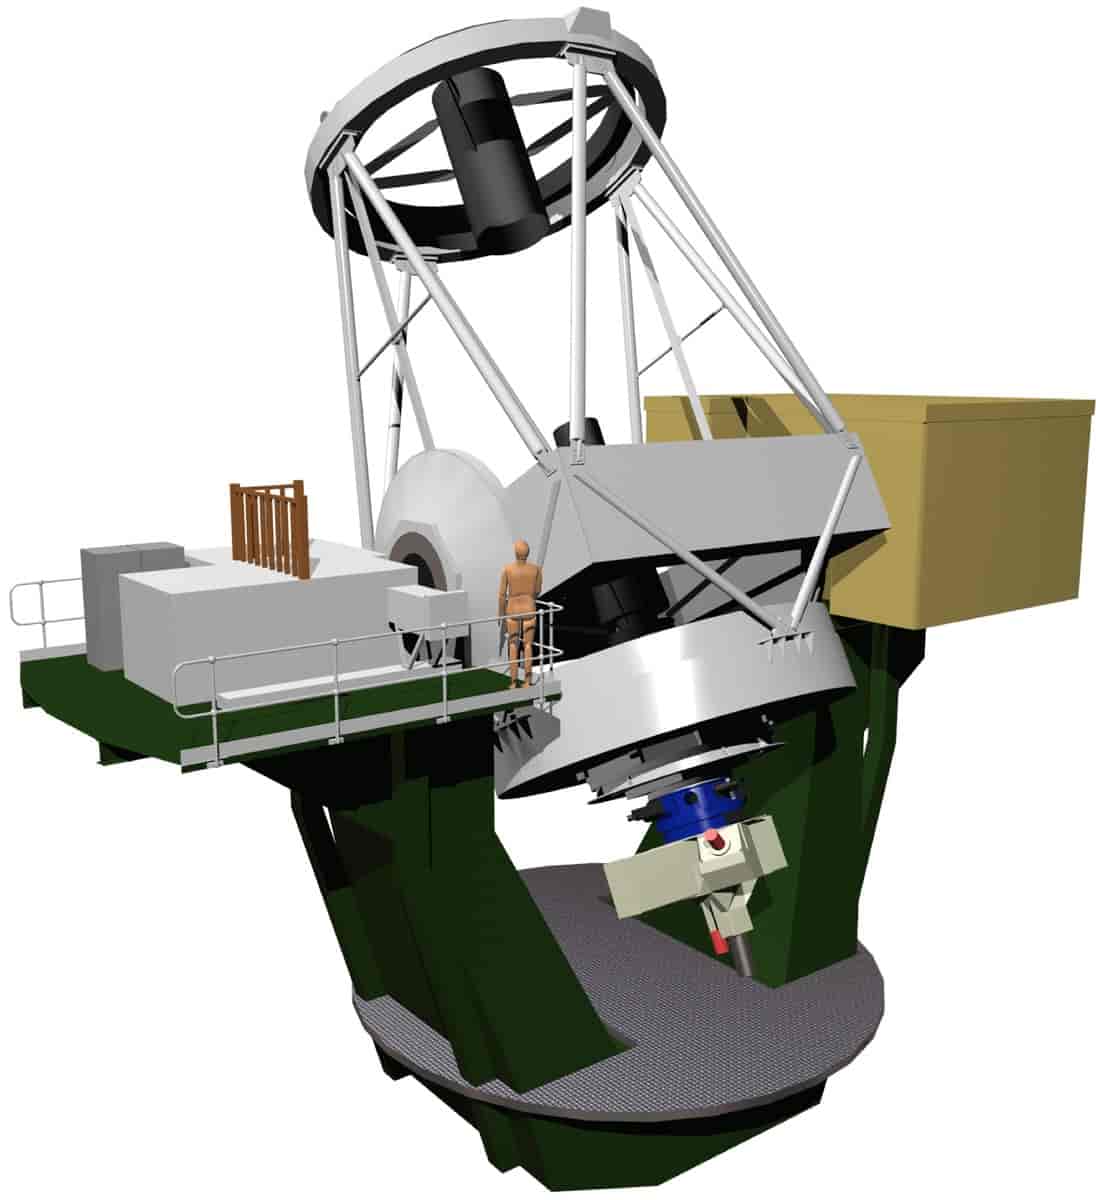 Modell av William Herschel 4,2 meter teleskopet på La Palma som anvender en Cassegrain-Nasmyth-løsning.  Med bildedannende lysstråle rettet ut langs teleskopets rotasjonsakse plasseres større instrumenter på en såkalt Nasmyth-plattform, som vist her.